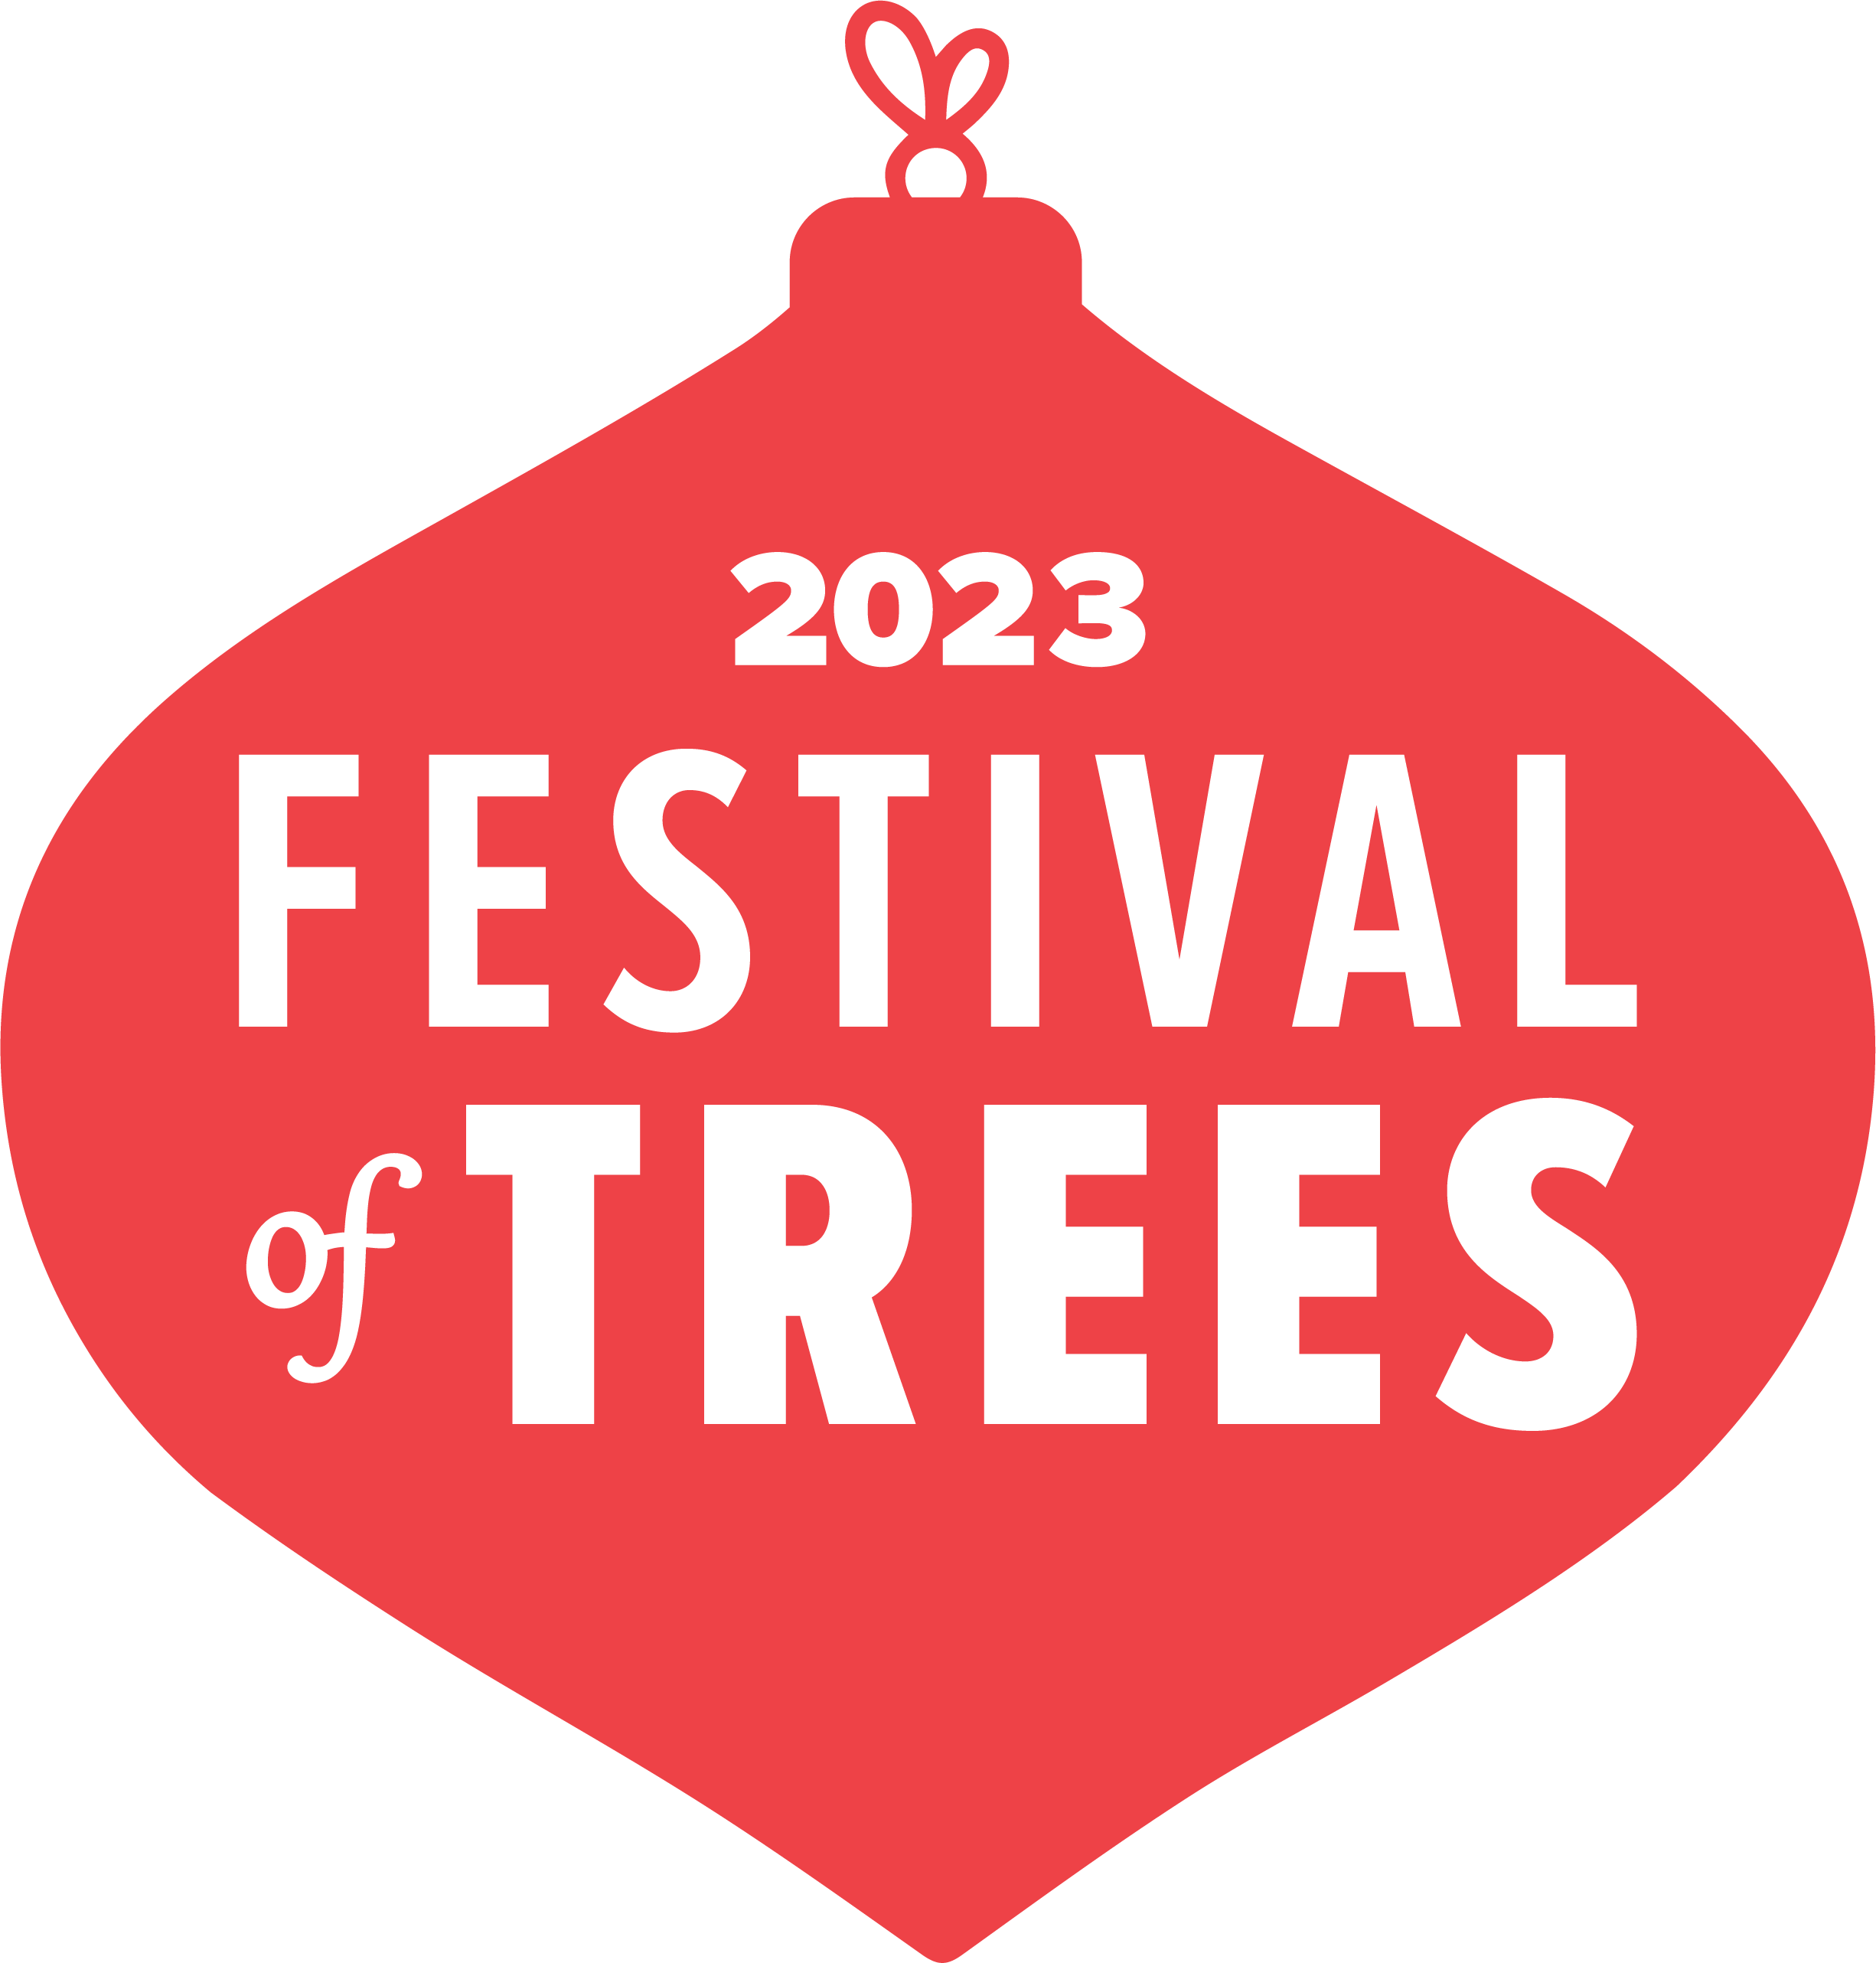 Festival of Trees logo